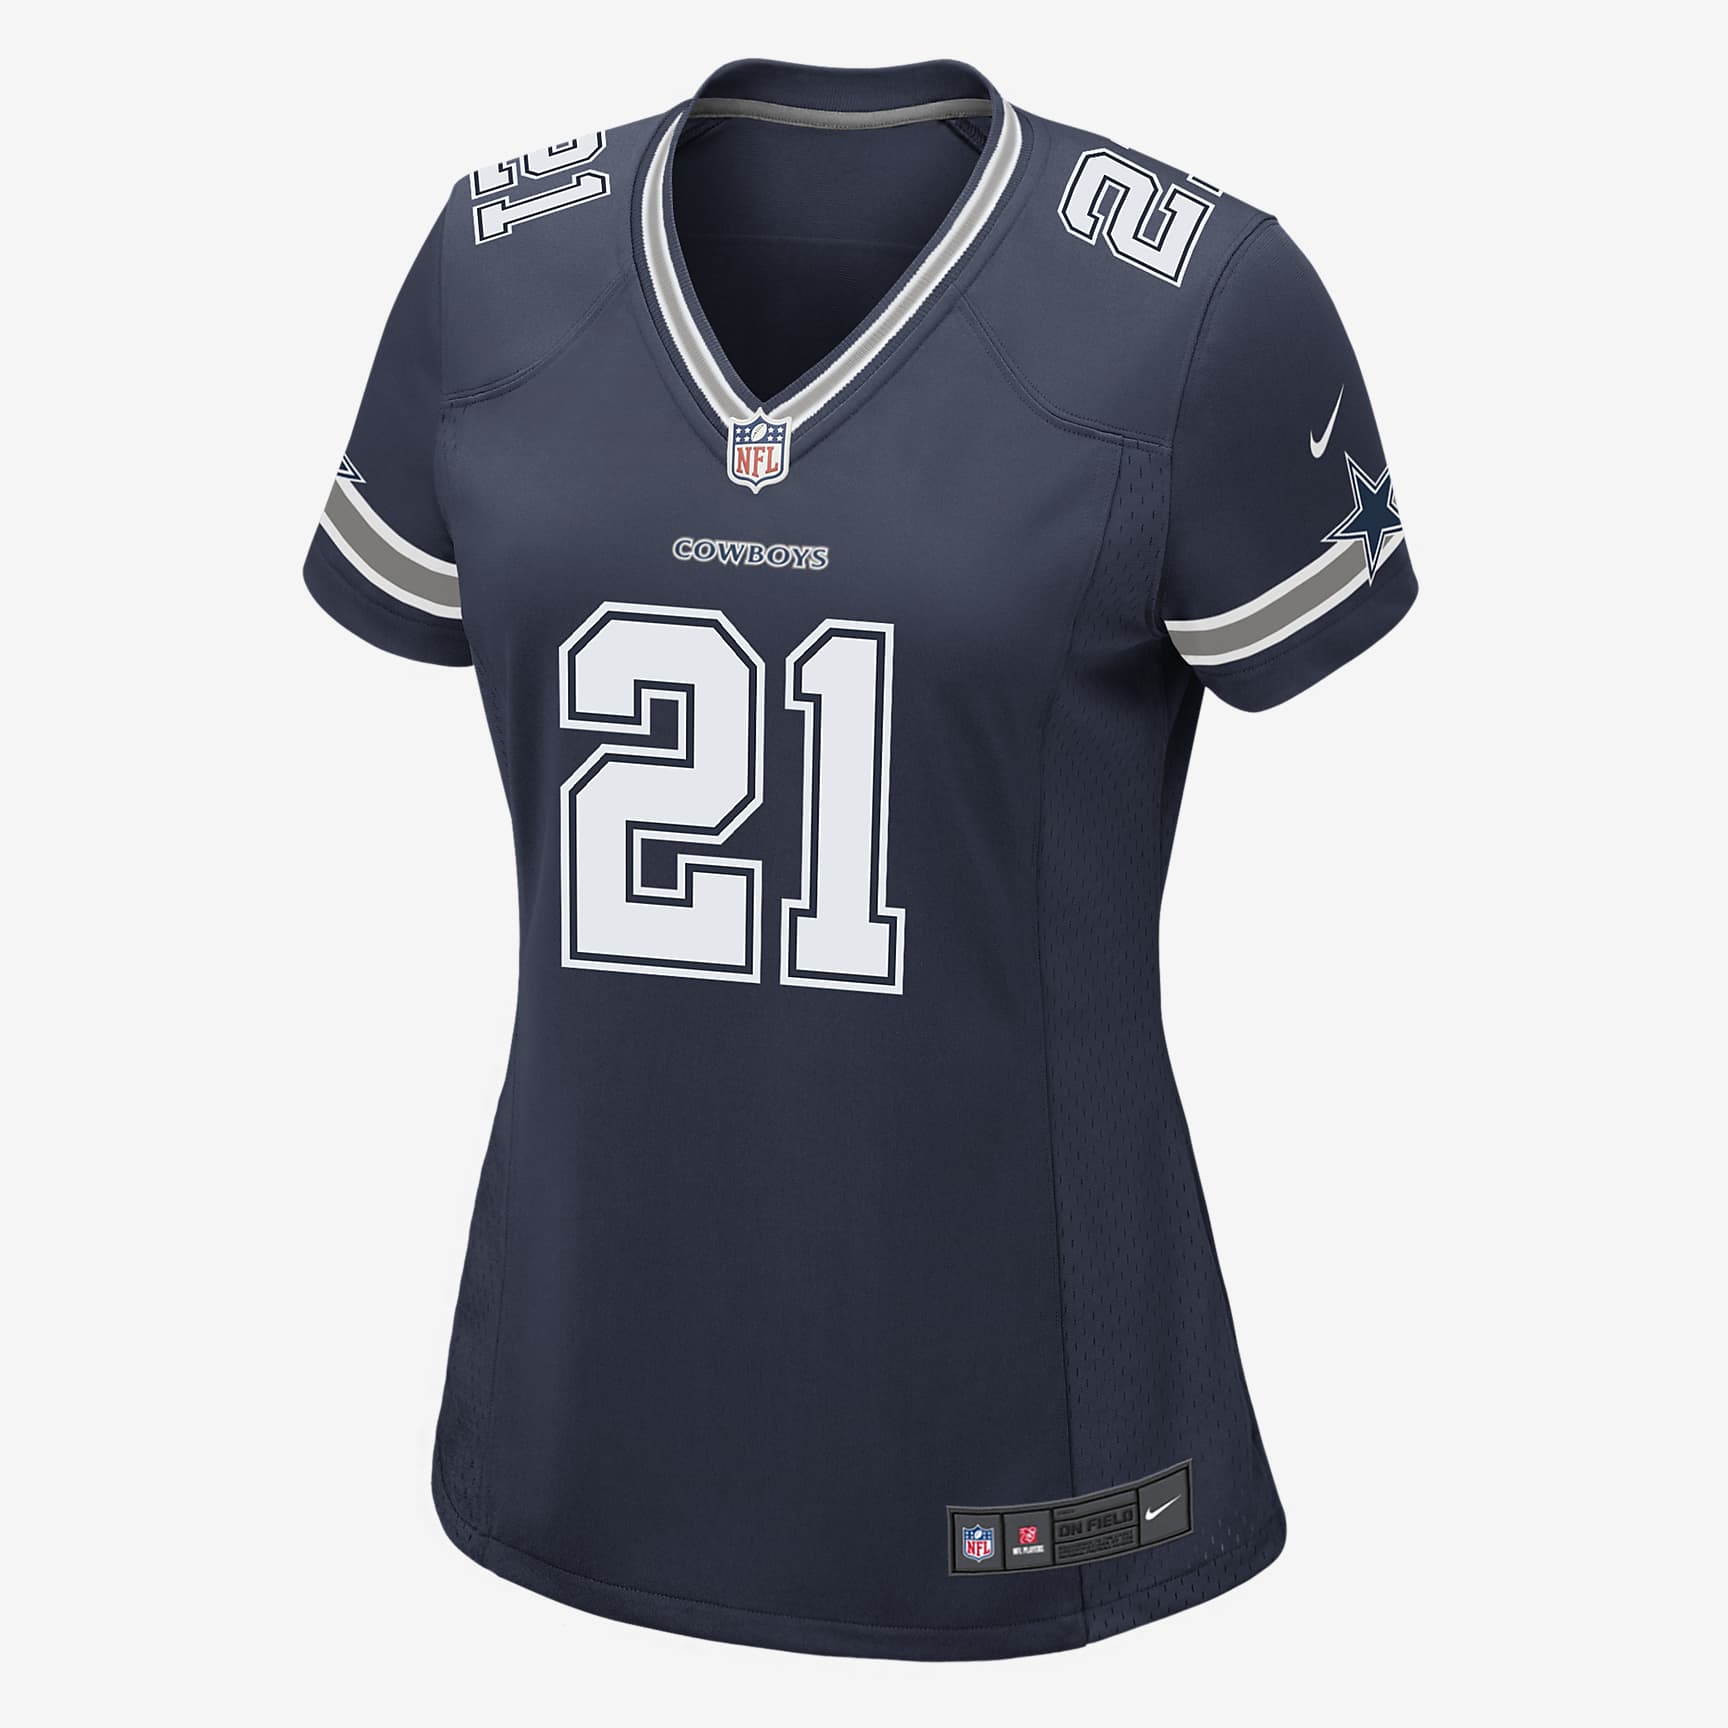 Camiseta de fútbol americano Game para mujer NFL Dallas Cowboys ...